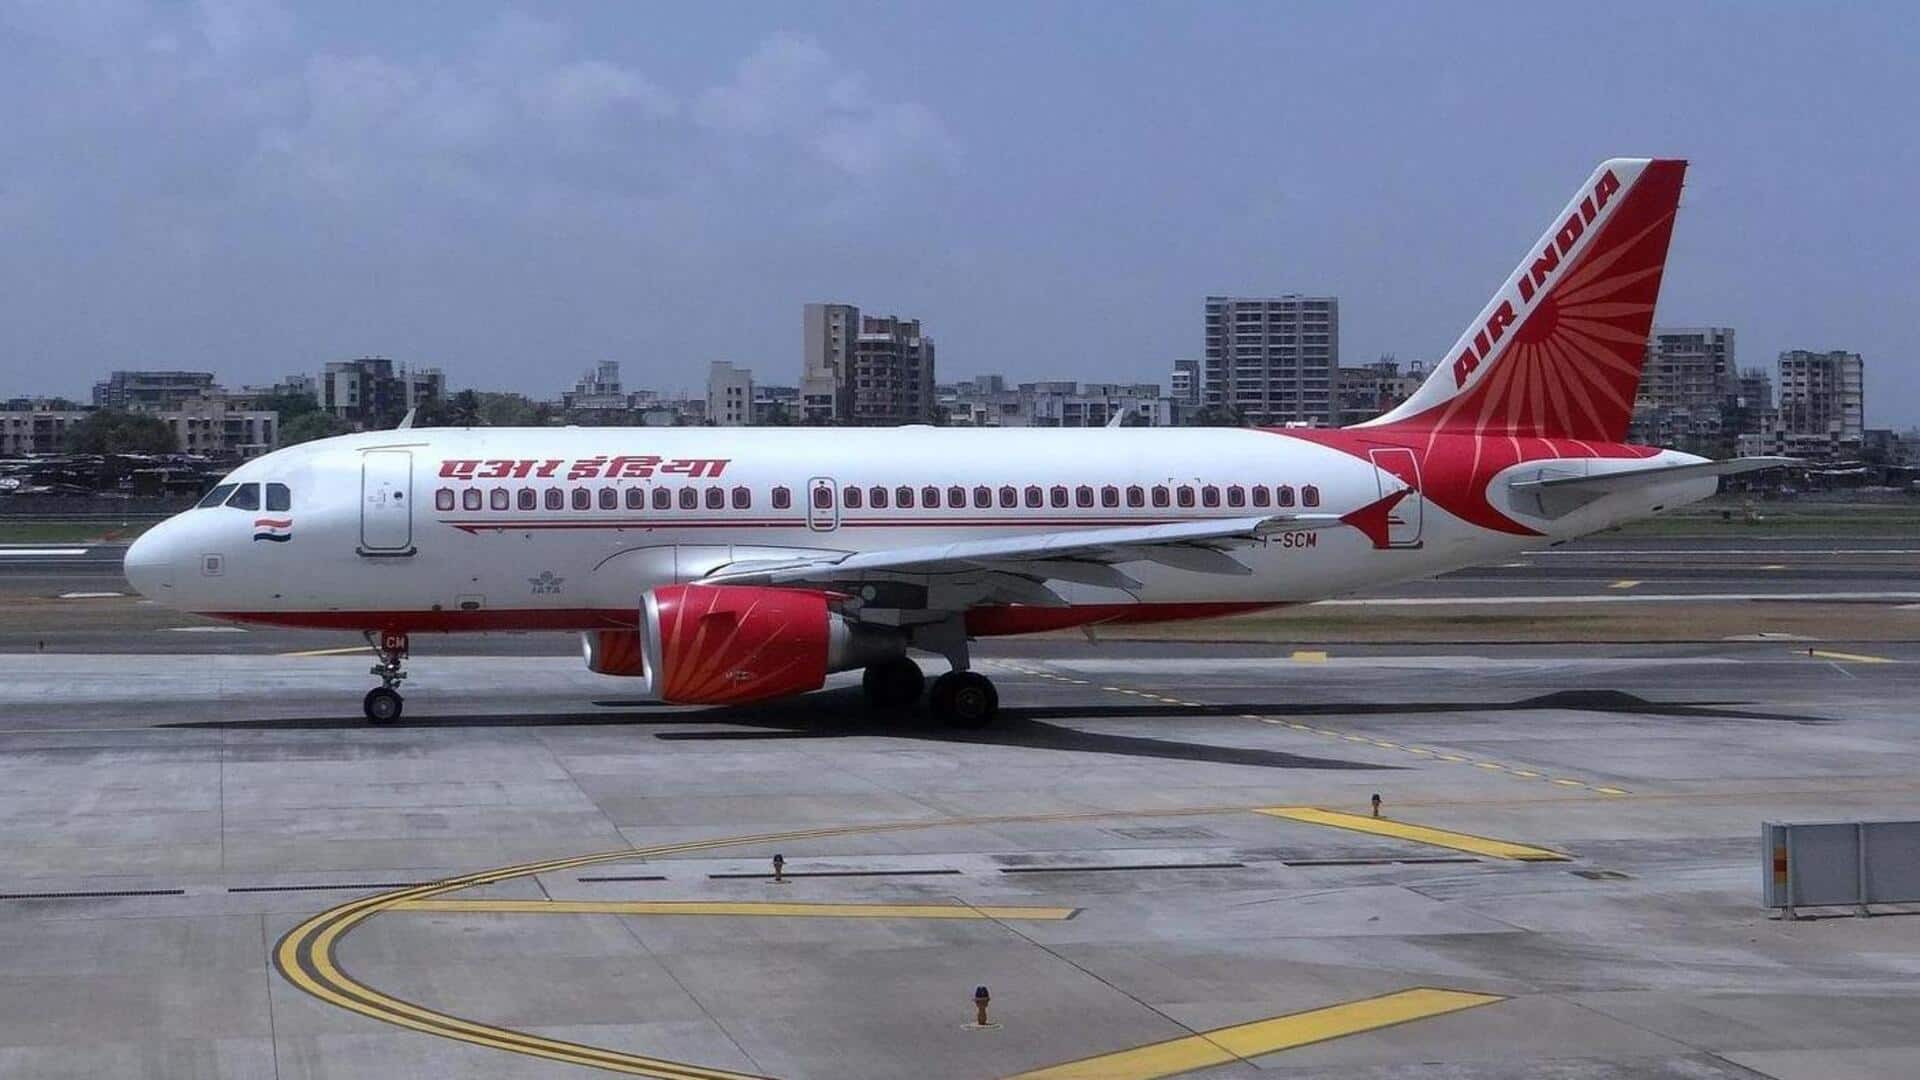 एयर इंडिया की फ्लाइट में यात्री को बिच्छू ने काटा, एयरलाइन ने घटना को बताया दुर्भाग्यपूर्ण